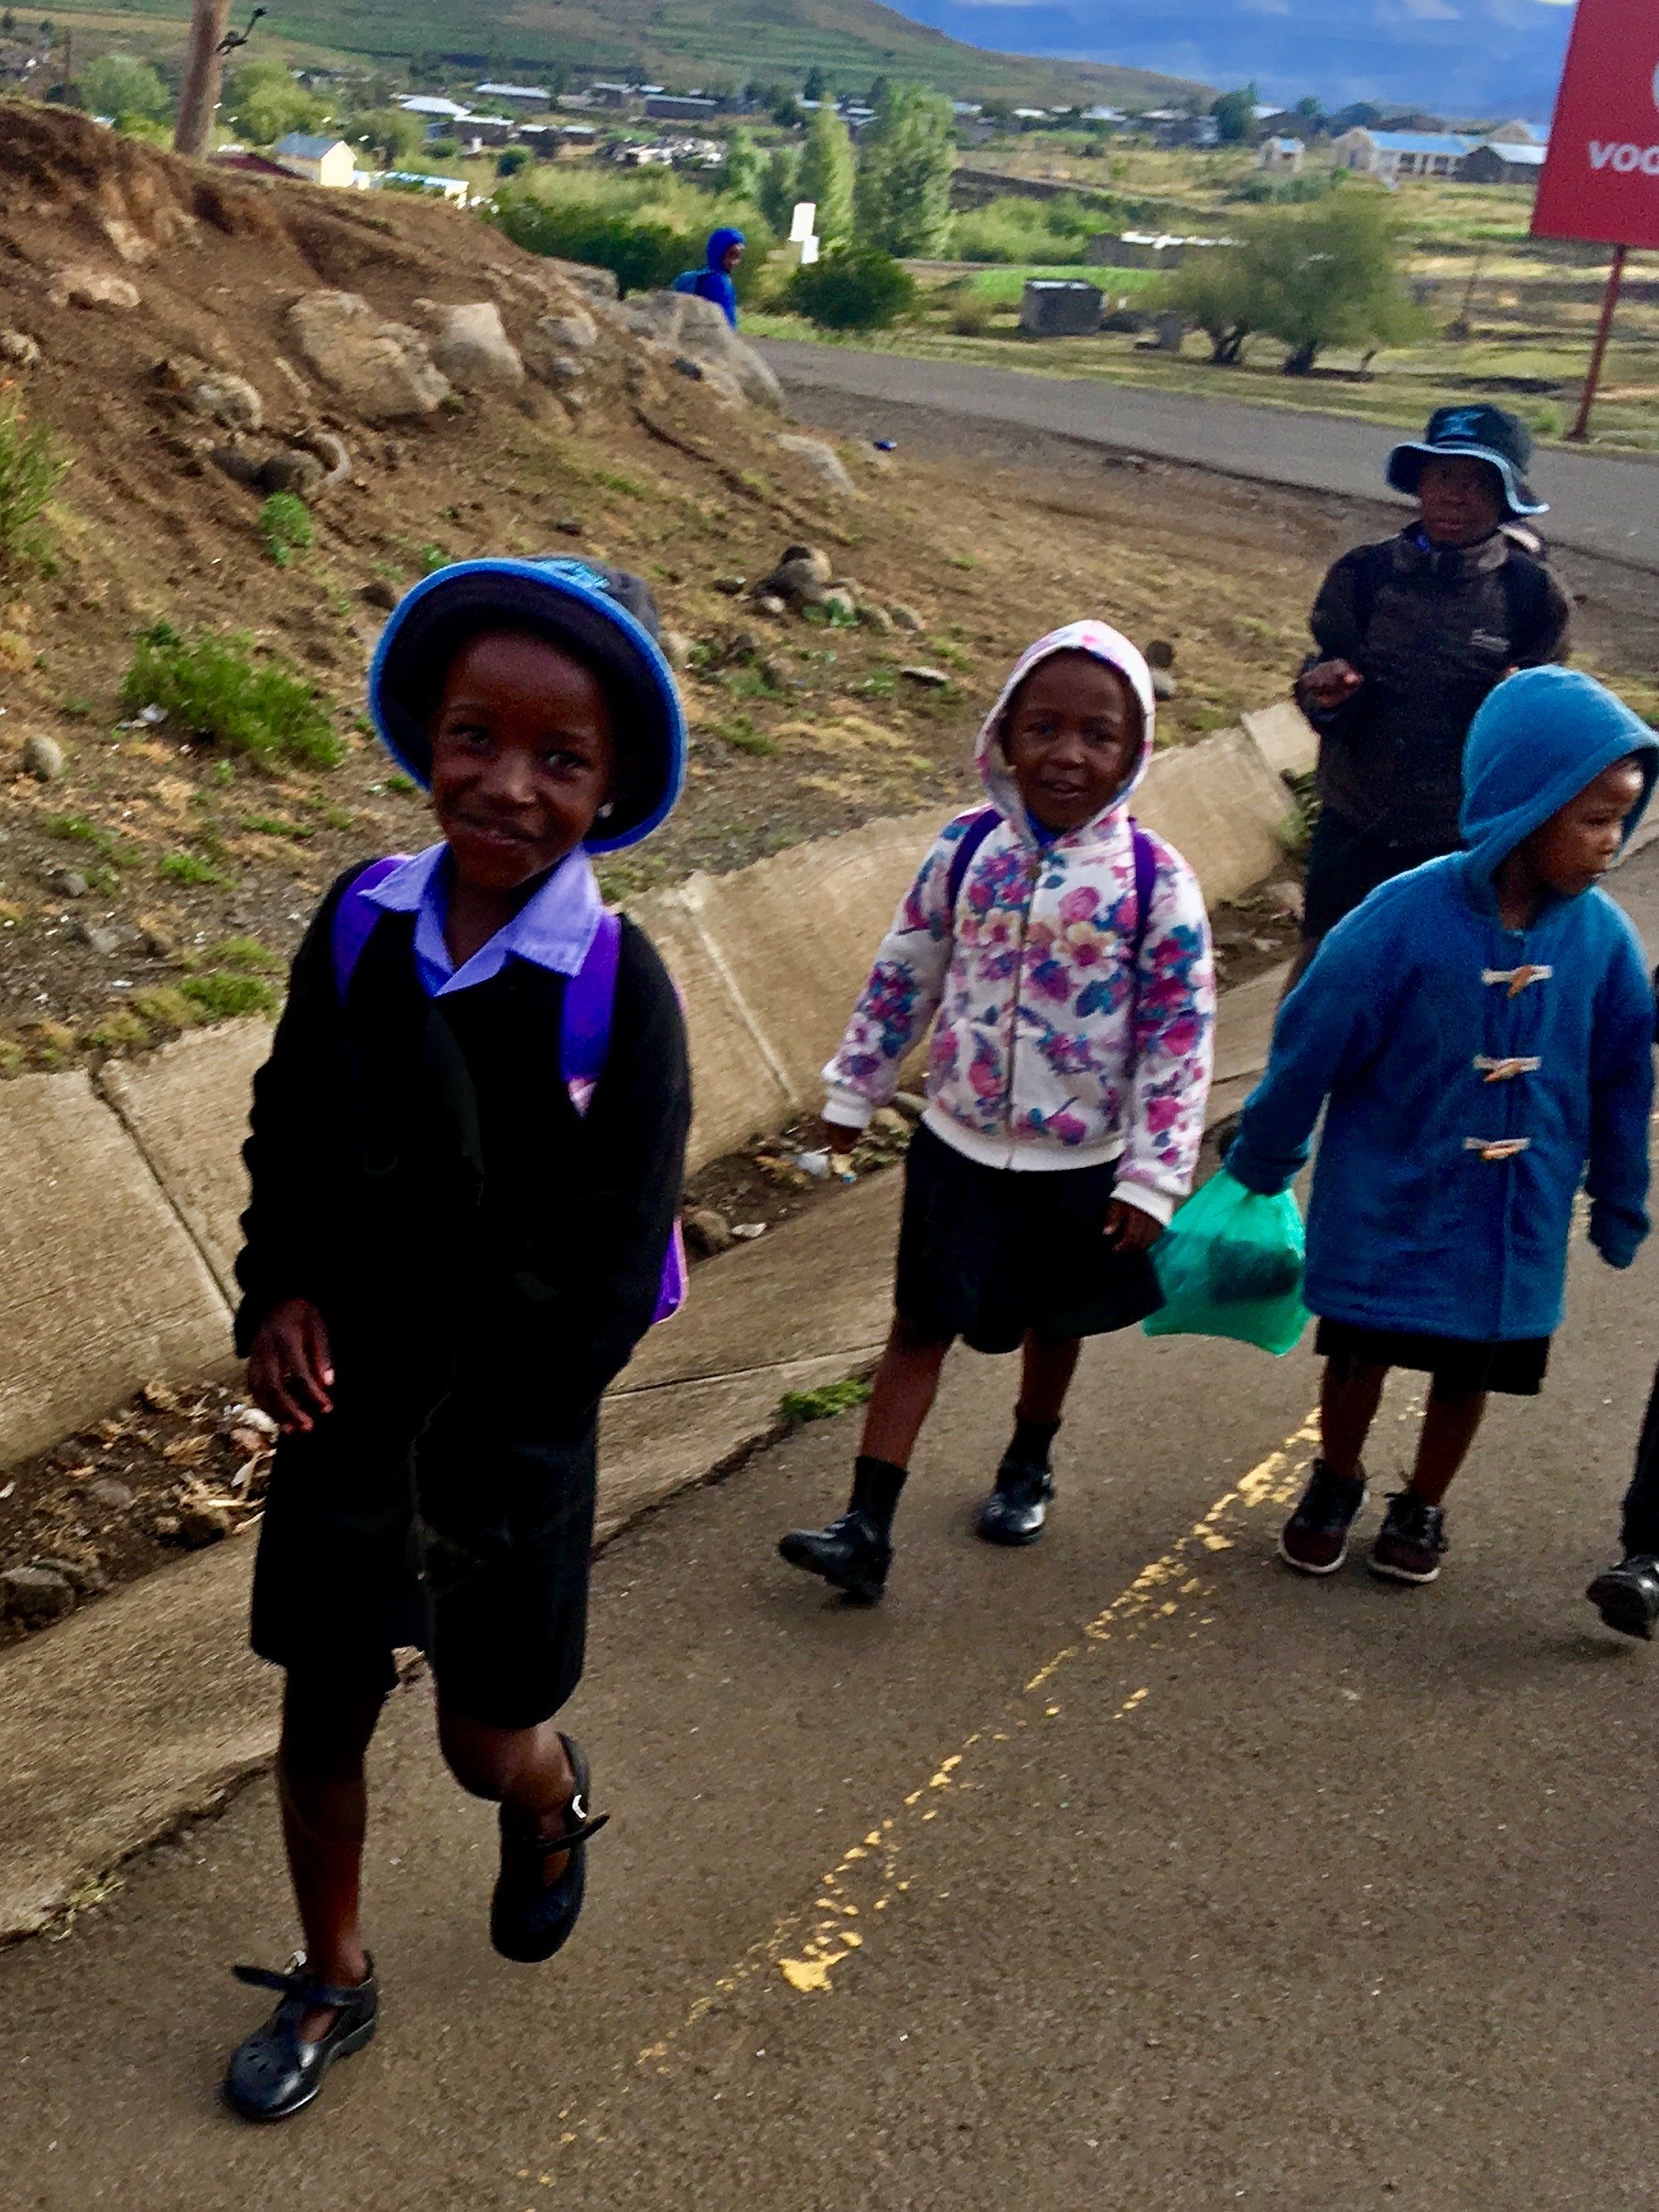 walking to school in Lesotho